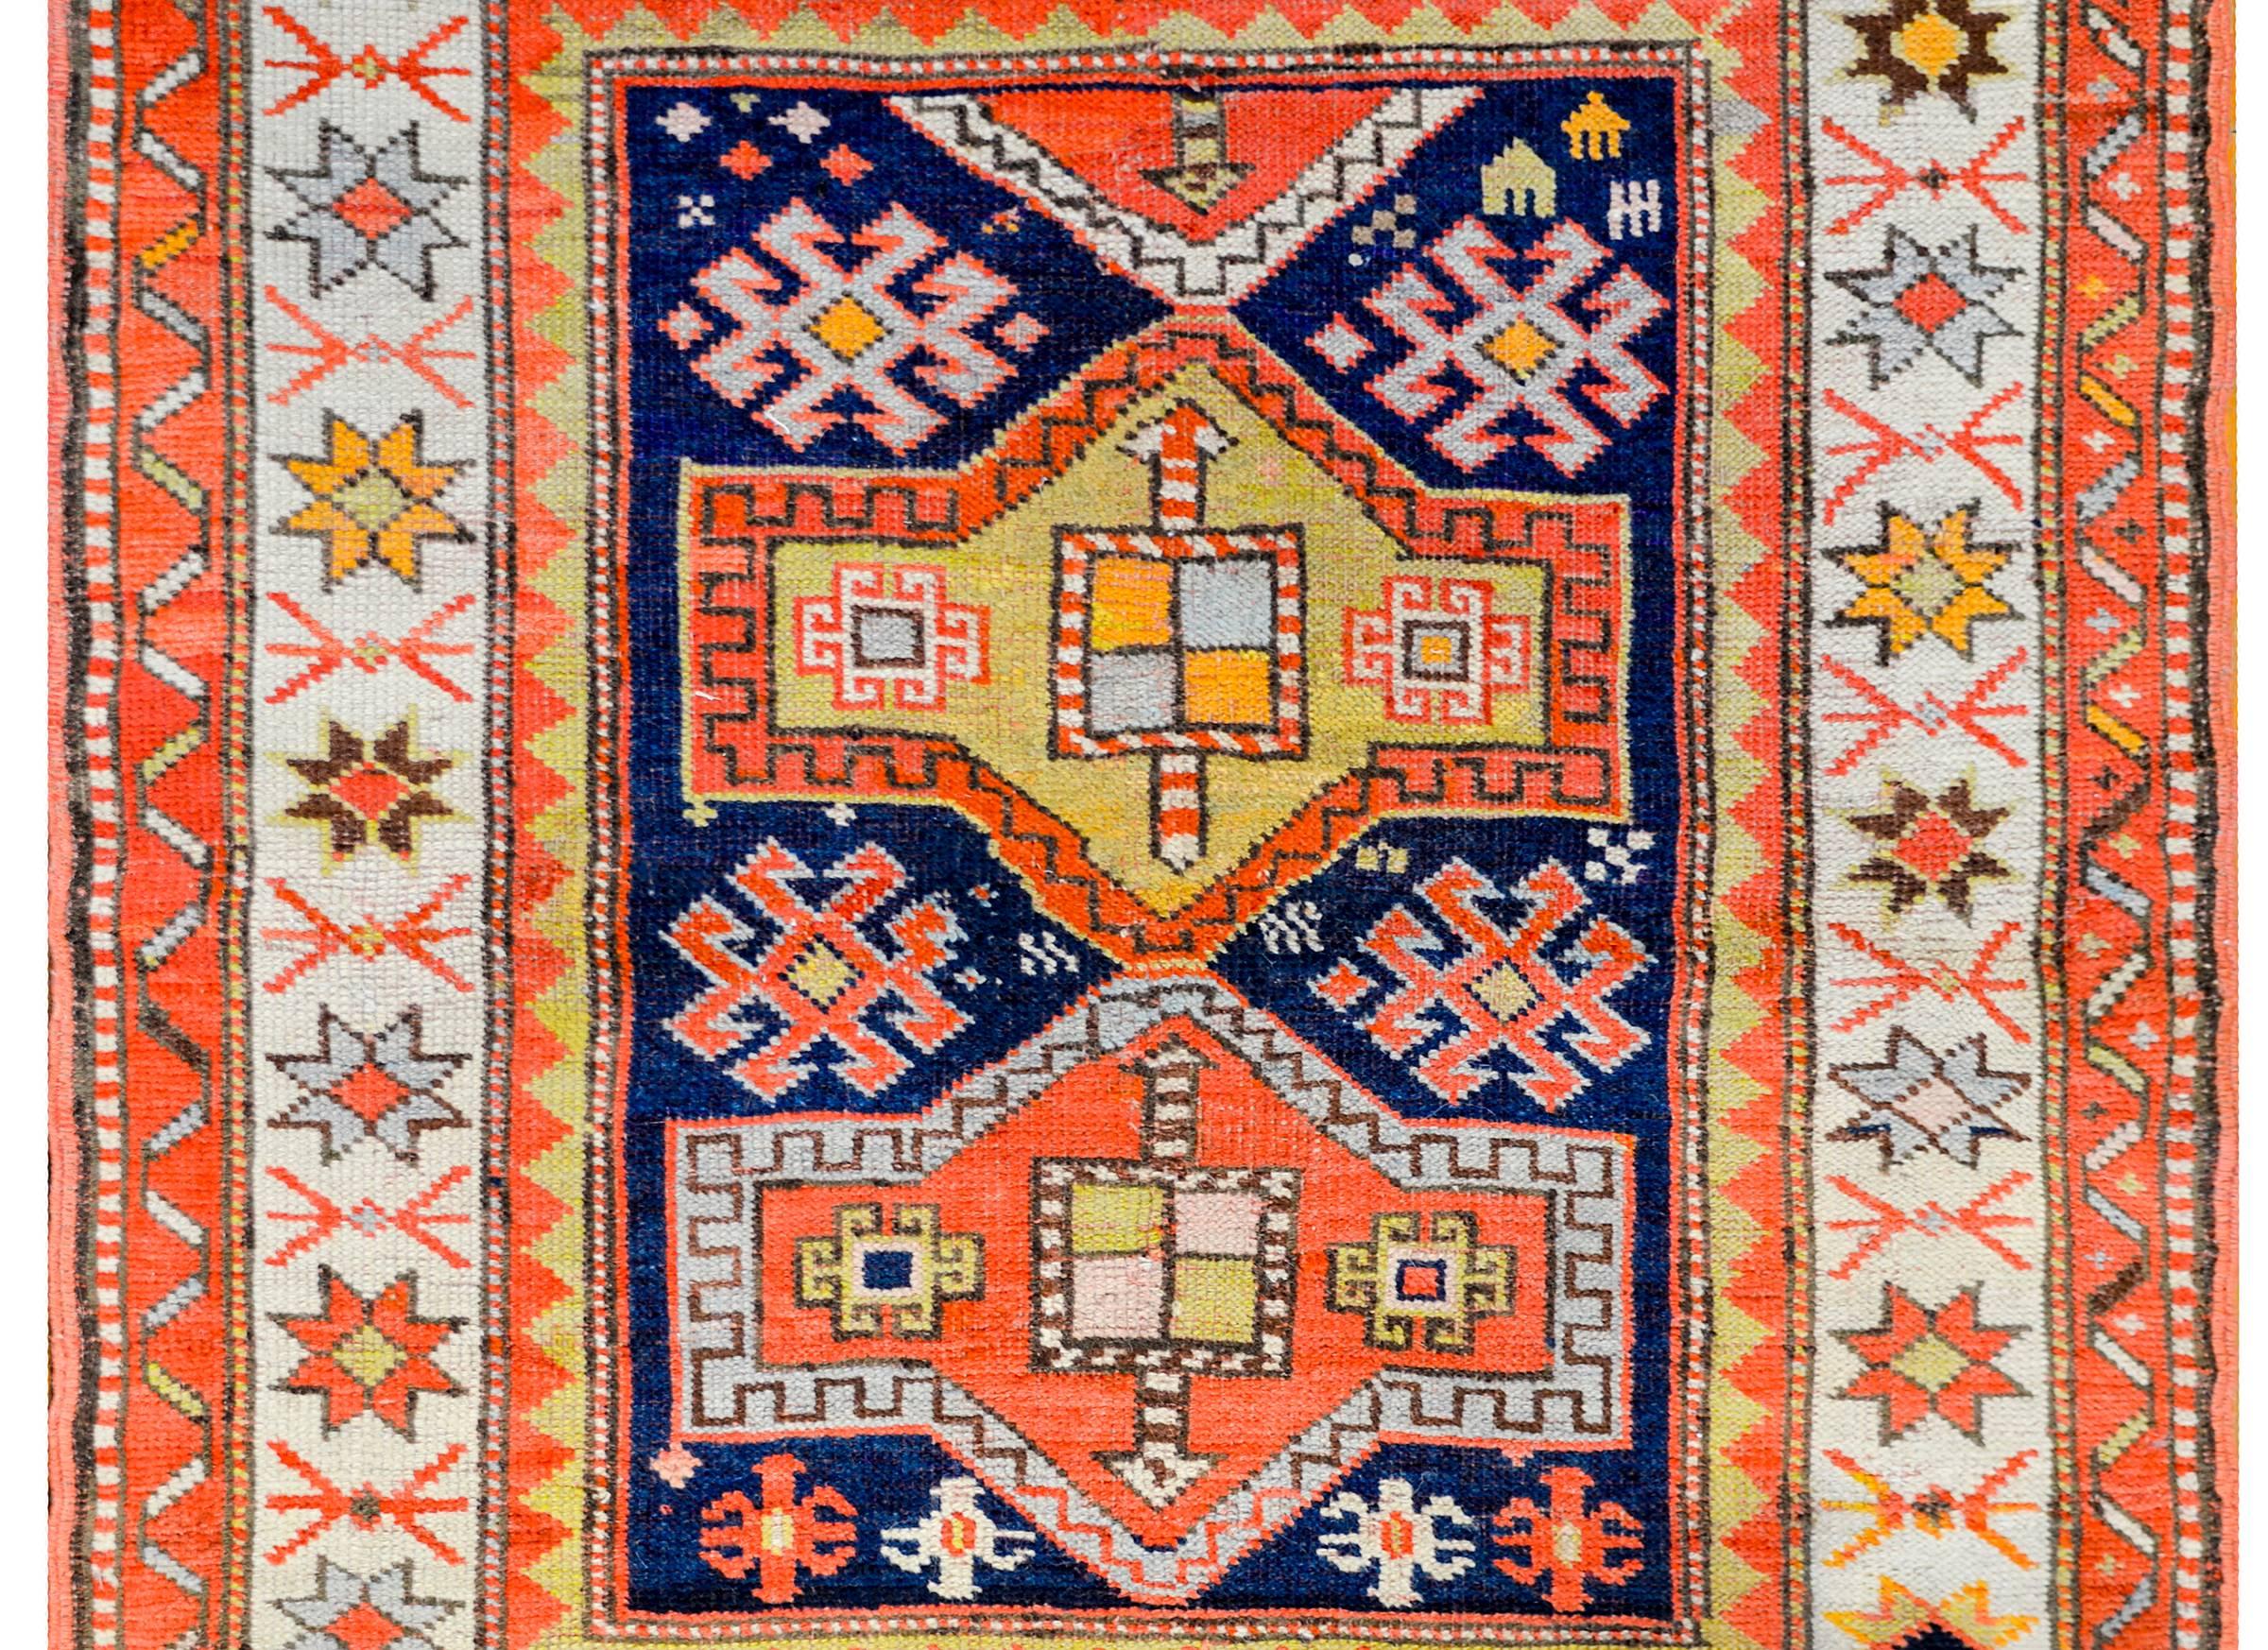 Ancien tapis kazakh Perisan du XIXe siècle présentant un magnifique motif tribal avec des fleurs stylisées et d'autres formes géométriques, tissé en laine de couleur cramoisie, indigo clair et foncé, or et vert sur un fond indigo foncé. La bordure